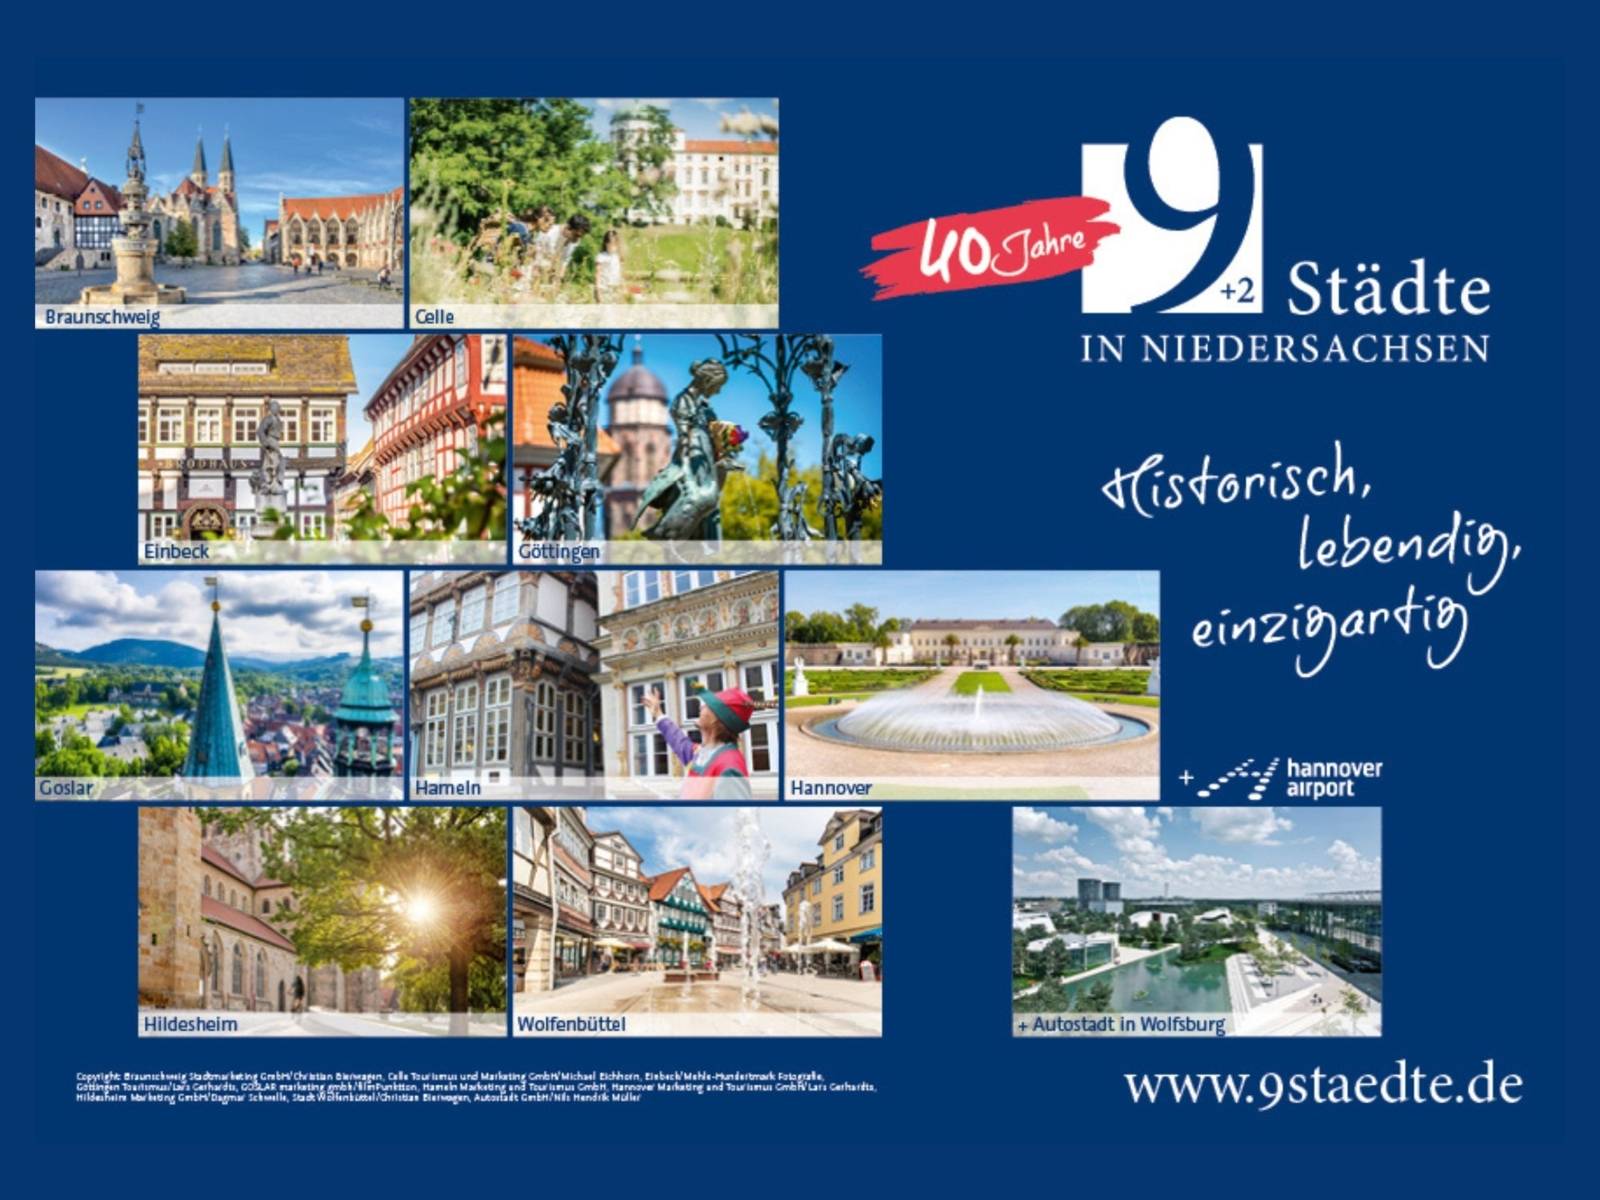 40 Jahre 9 Städte + 2 in Niedersachsen